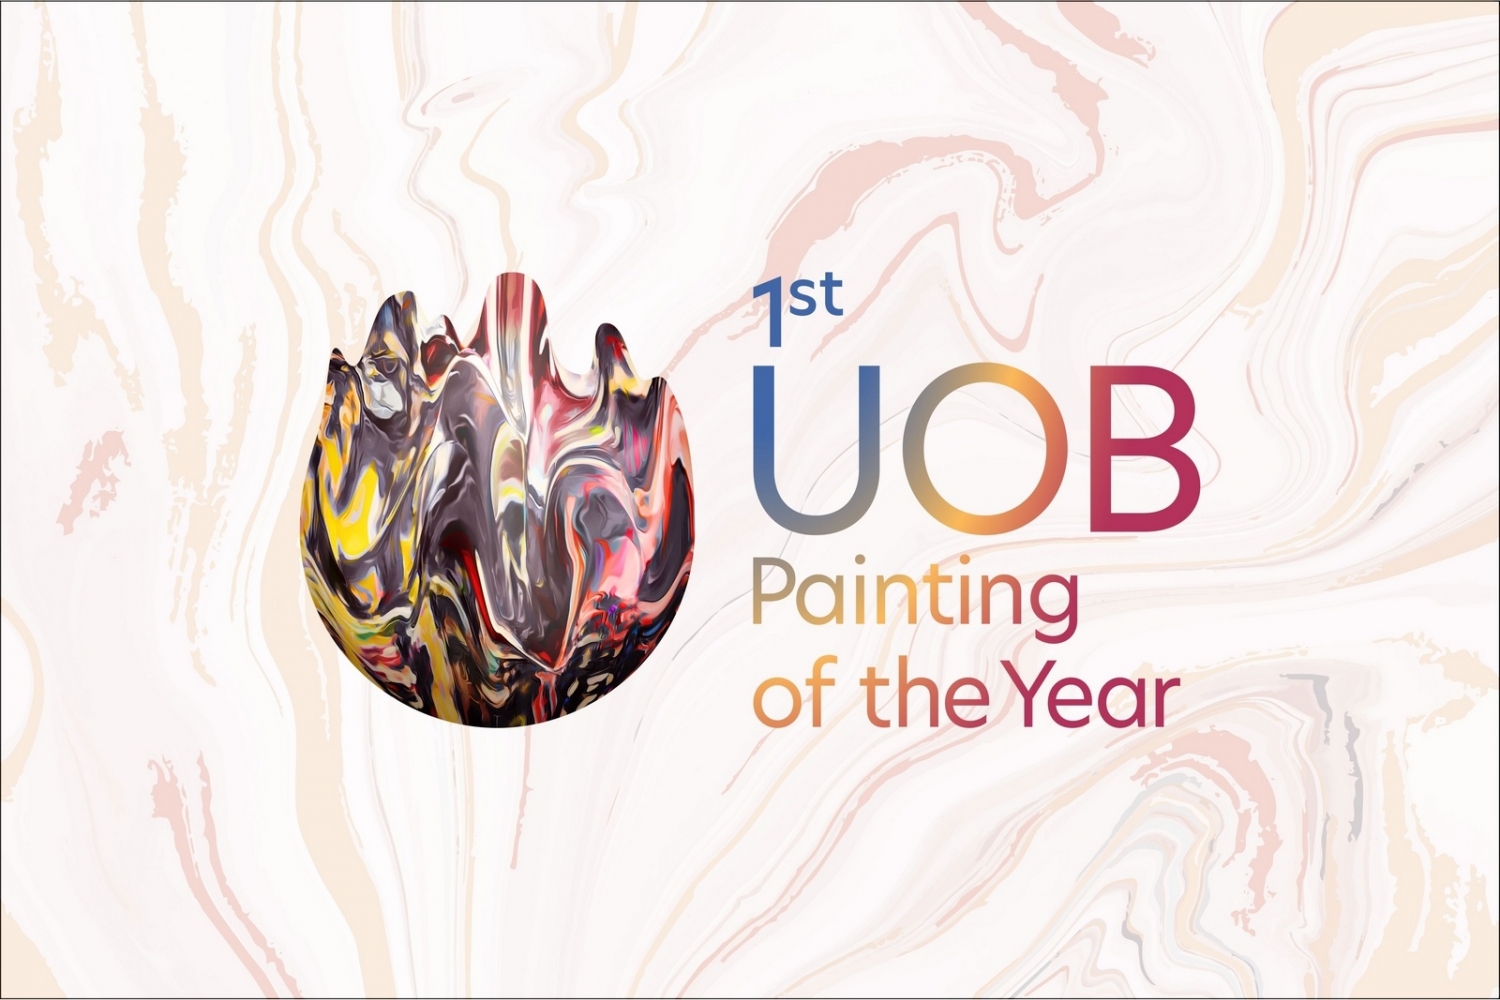 Khởi động cuộc thi “UOB Painting of the Year” lần đầu tiên tại Việt Nam